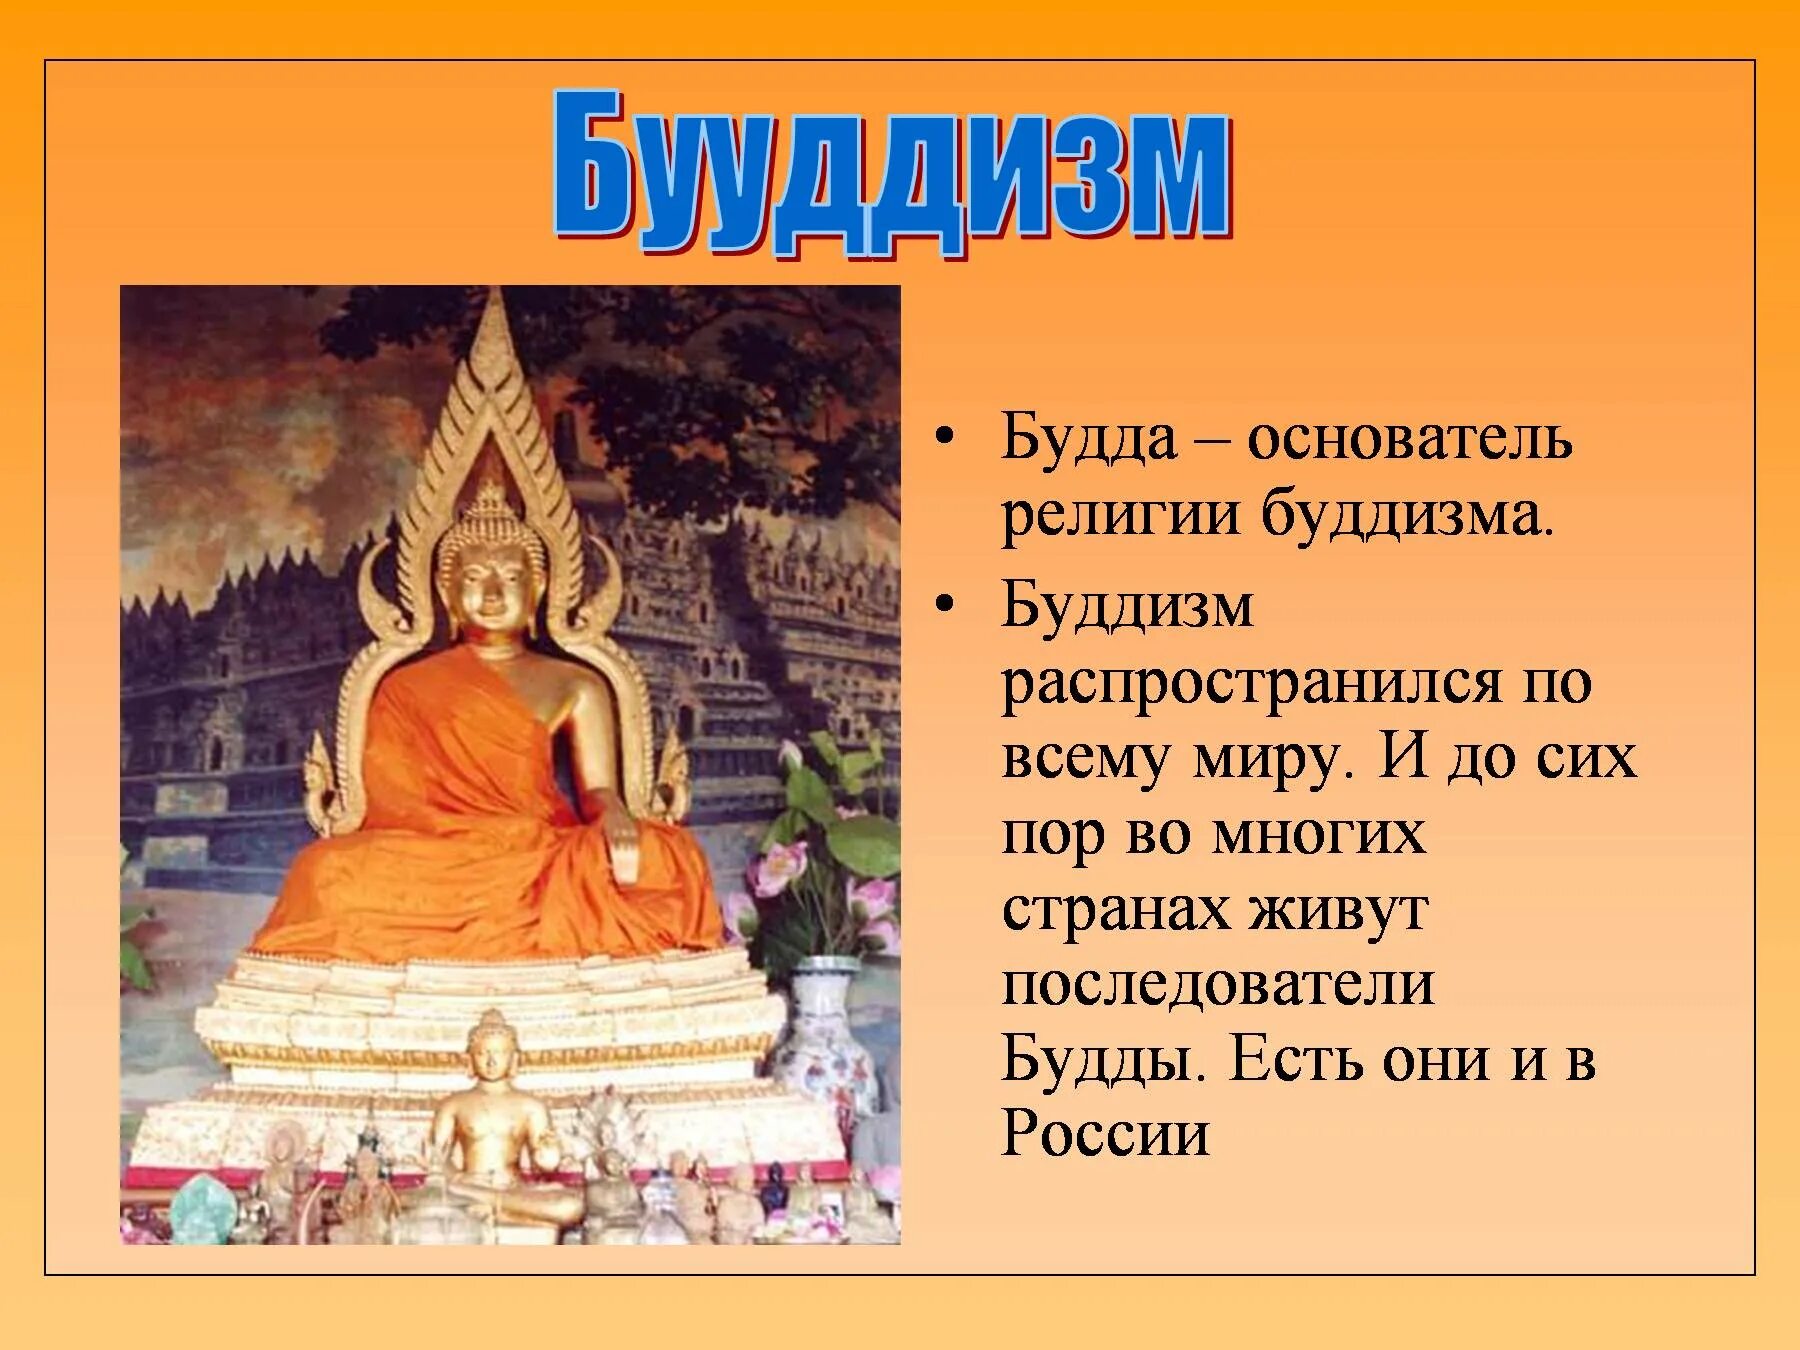 Будда основатель религии буддизма. Будда в древней Индии основатель. Основатель религии Будда 5 класс. Будда Шакьямуни древнее изображение. Возникновение буддизма в древней индии 5 класс